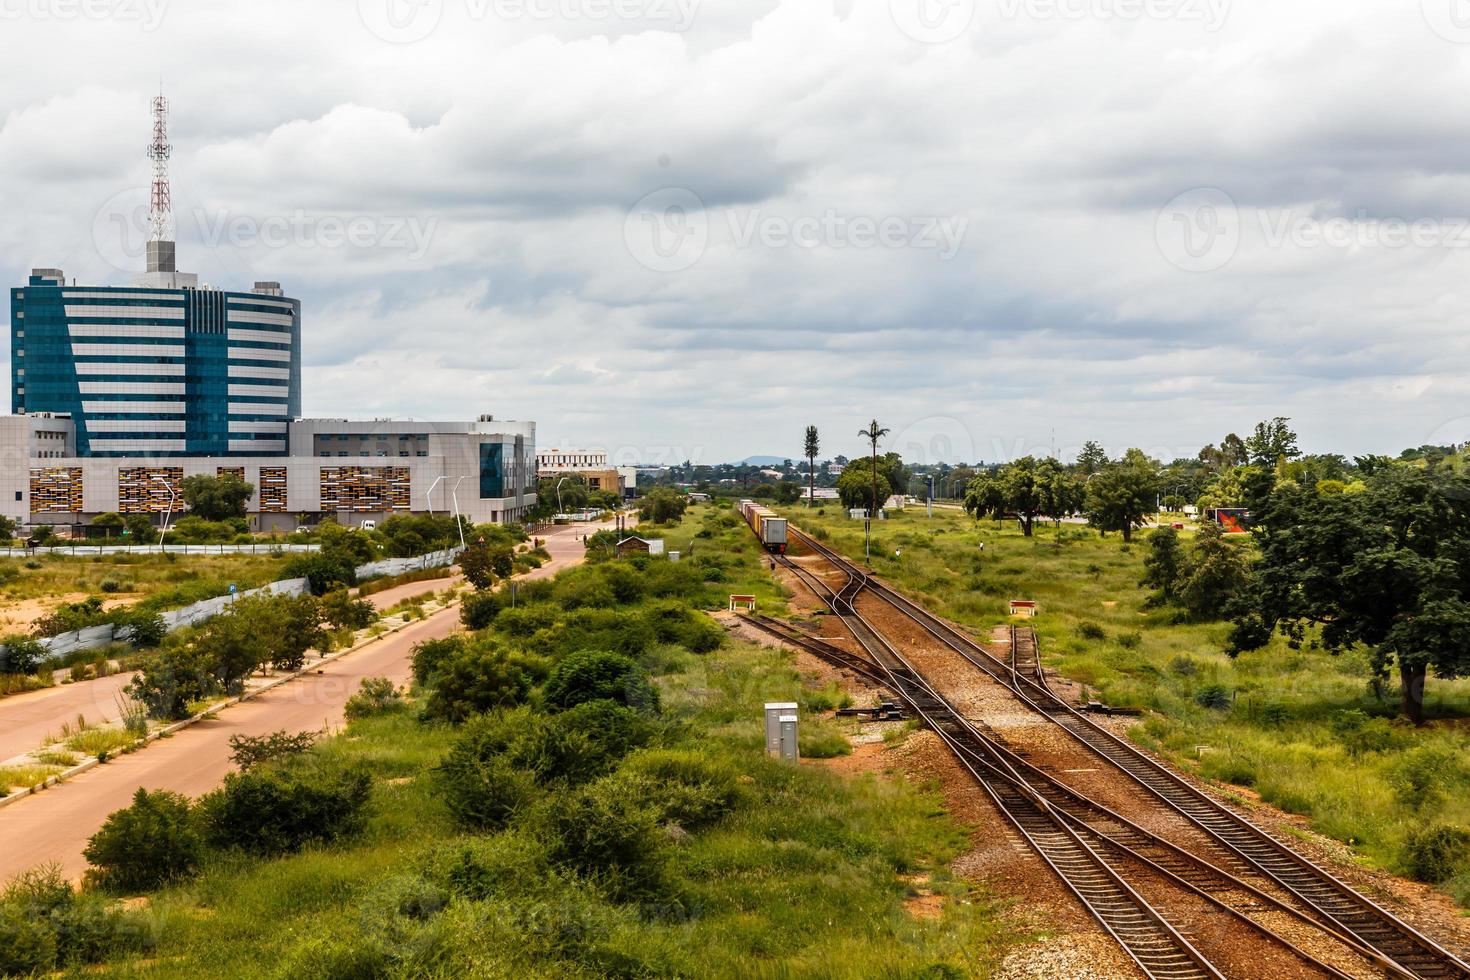 Chemin de fer et quartier central des affaires en développement rapide, Gaborone, Botswana, Afrique, 2017 photo